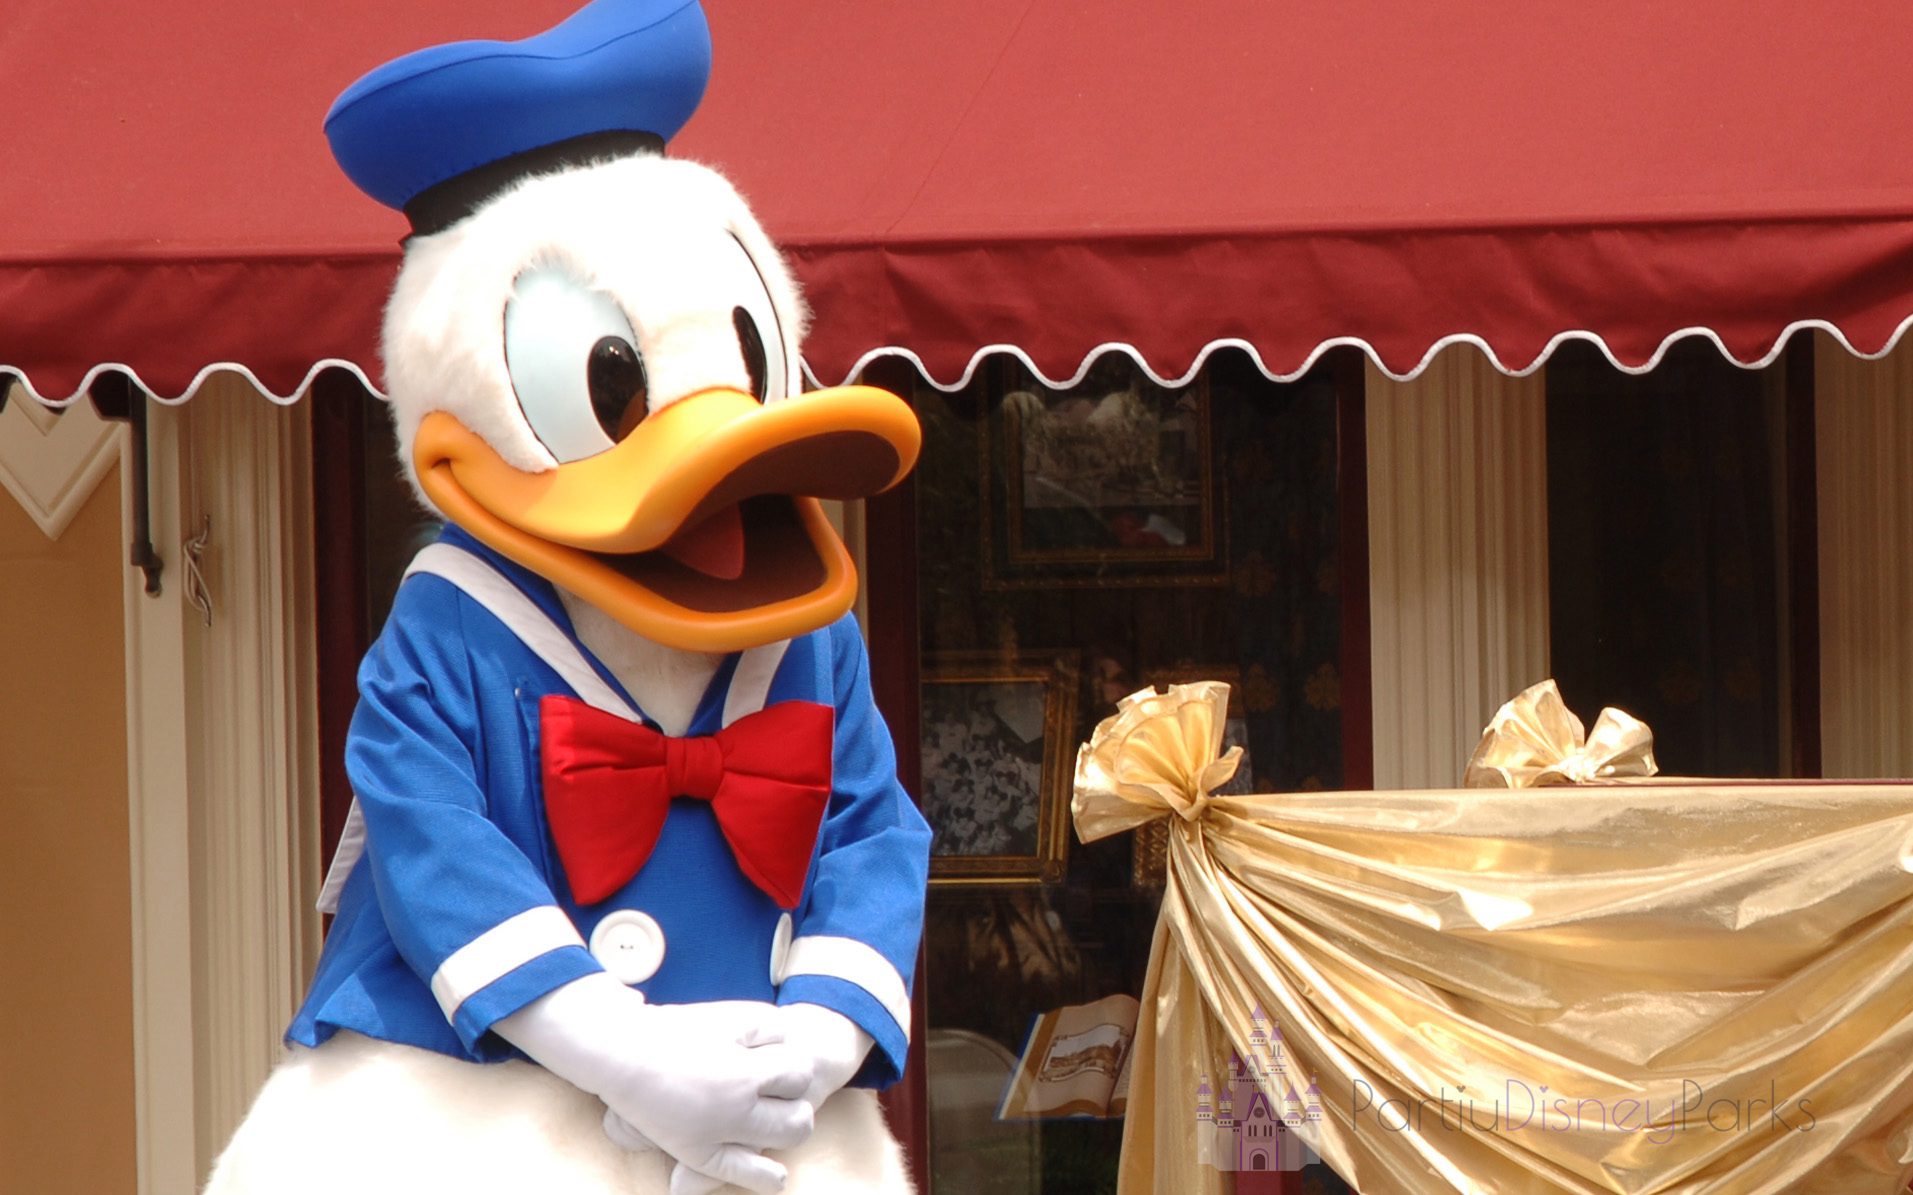 Nuestra guía enumera 8 formas de encontrar al pato Donald en Disney